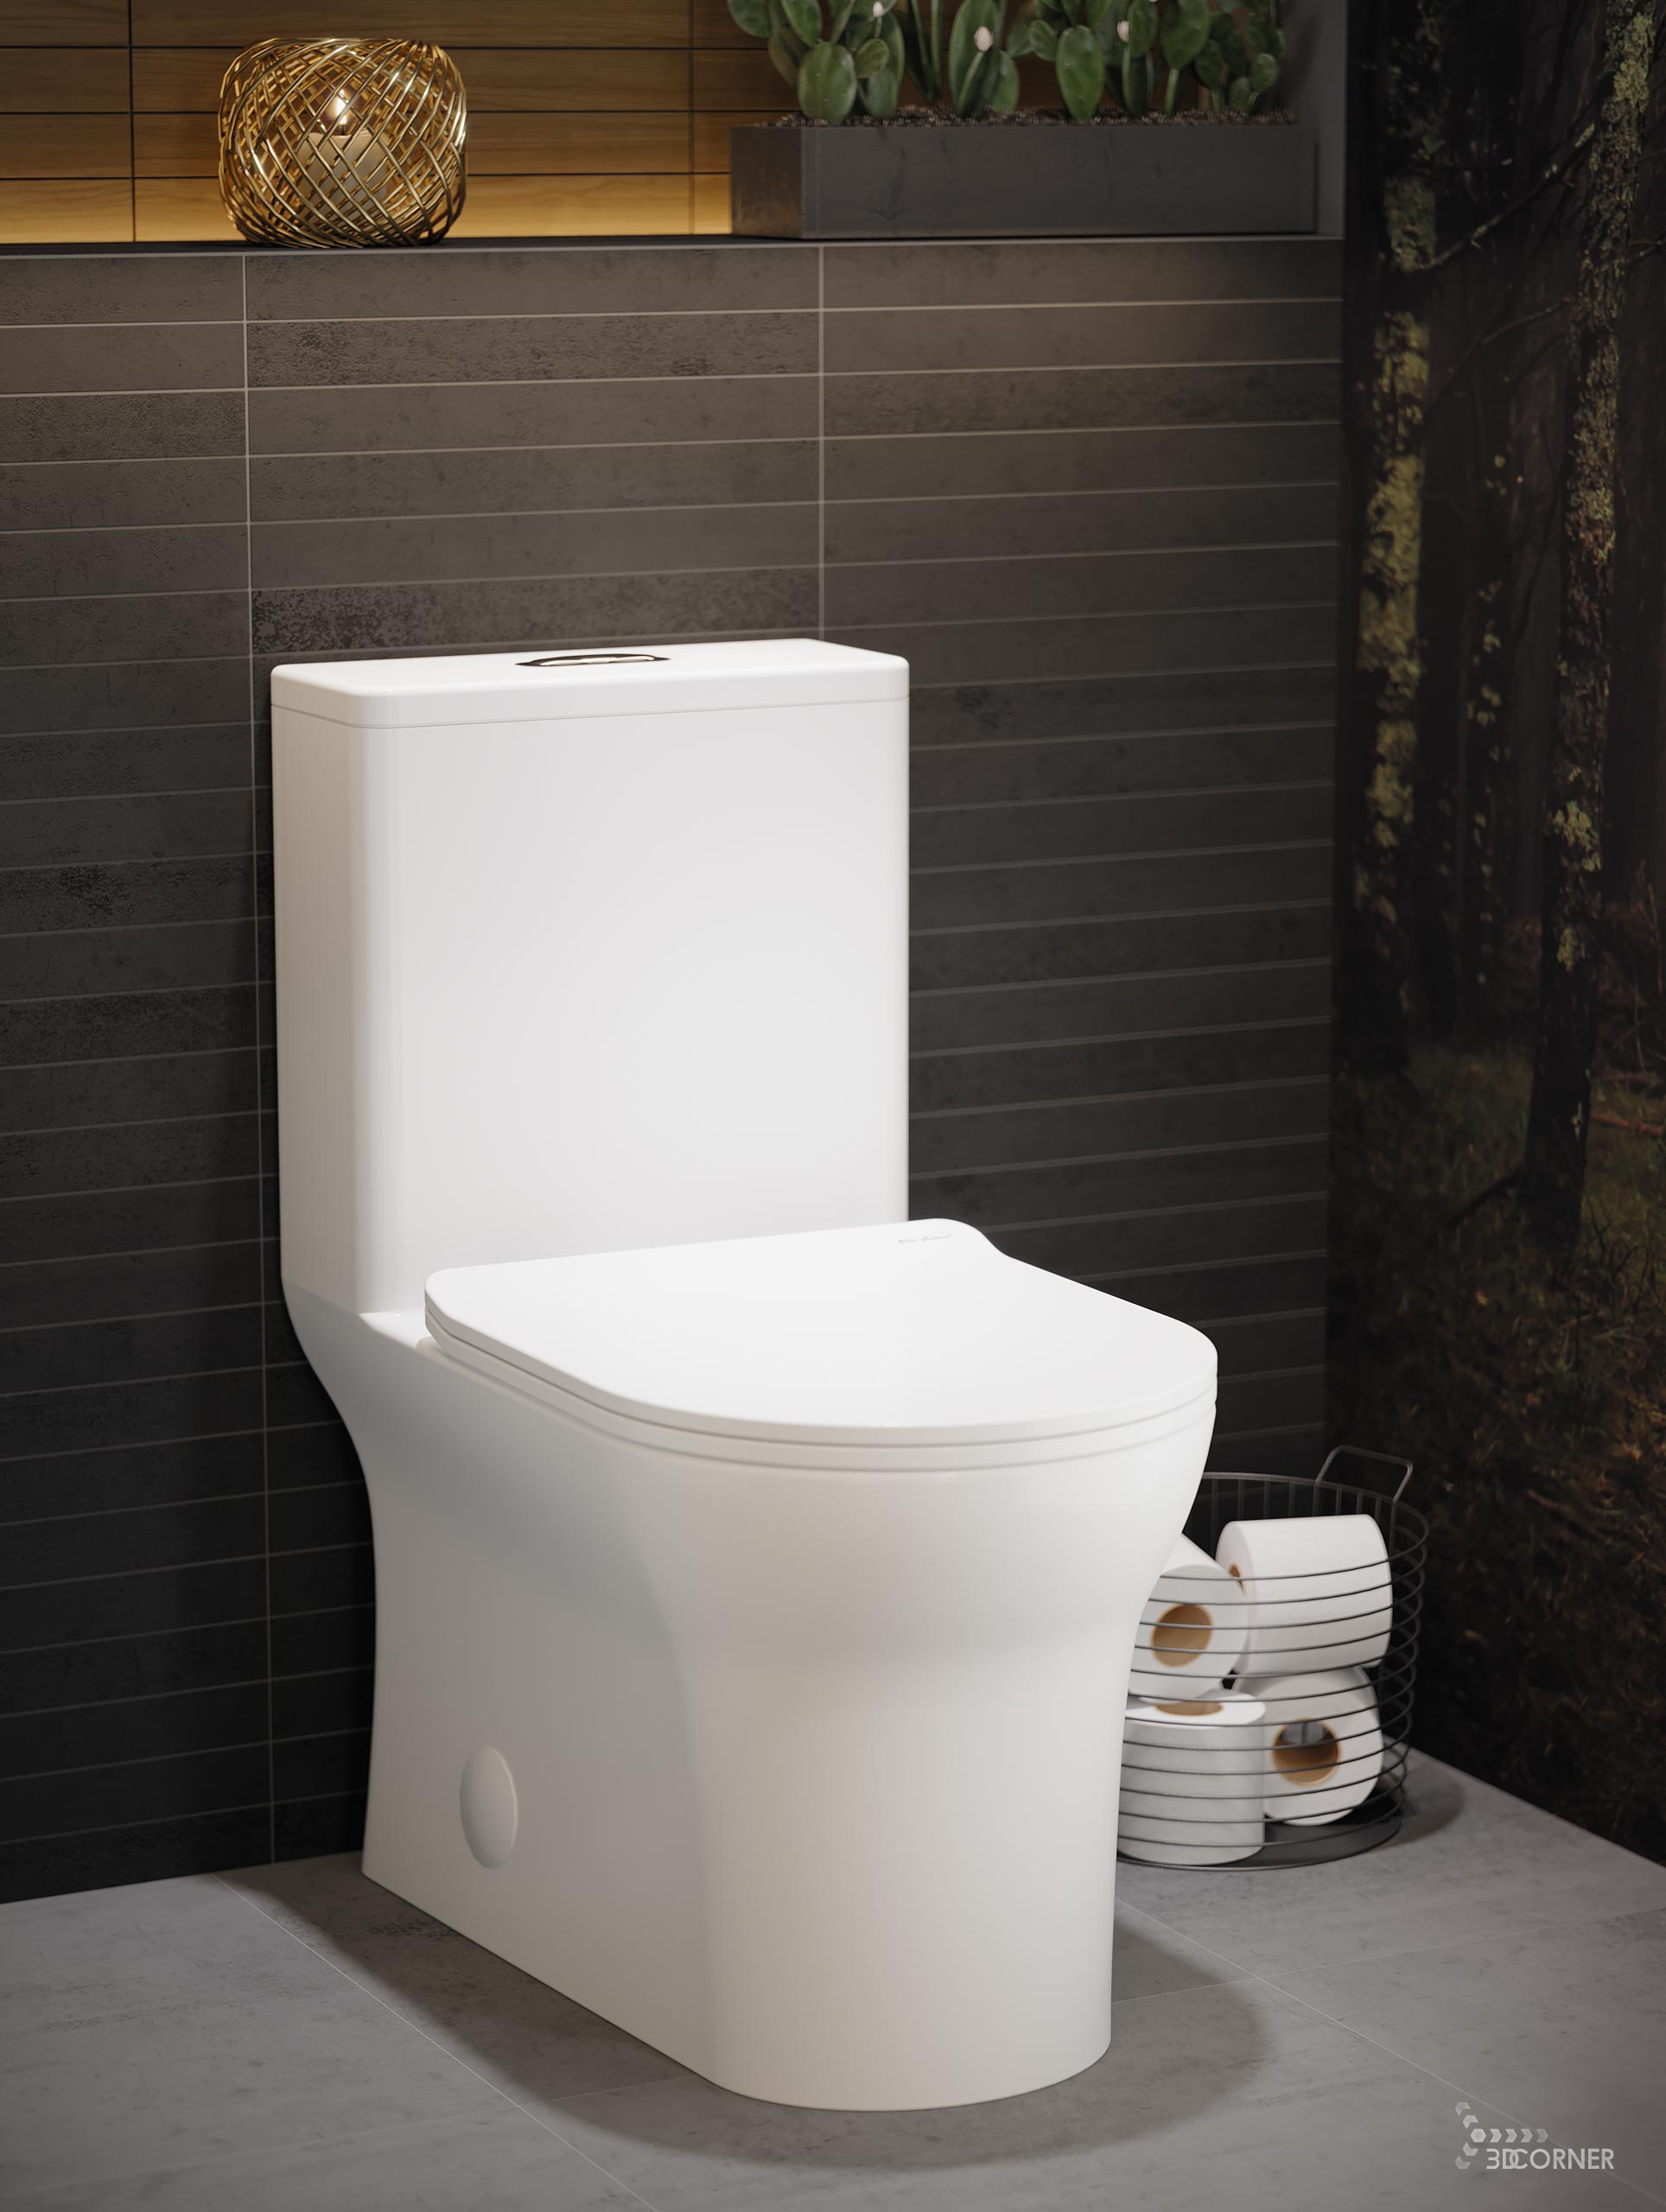 visualization 3d rendering archviz architectural bathroom toilet dark contemporary corner